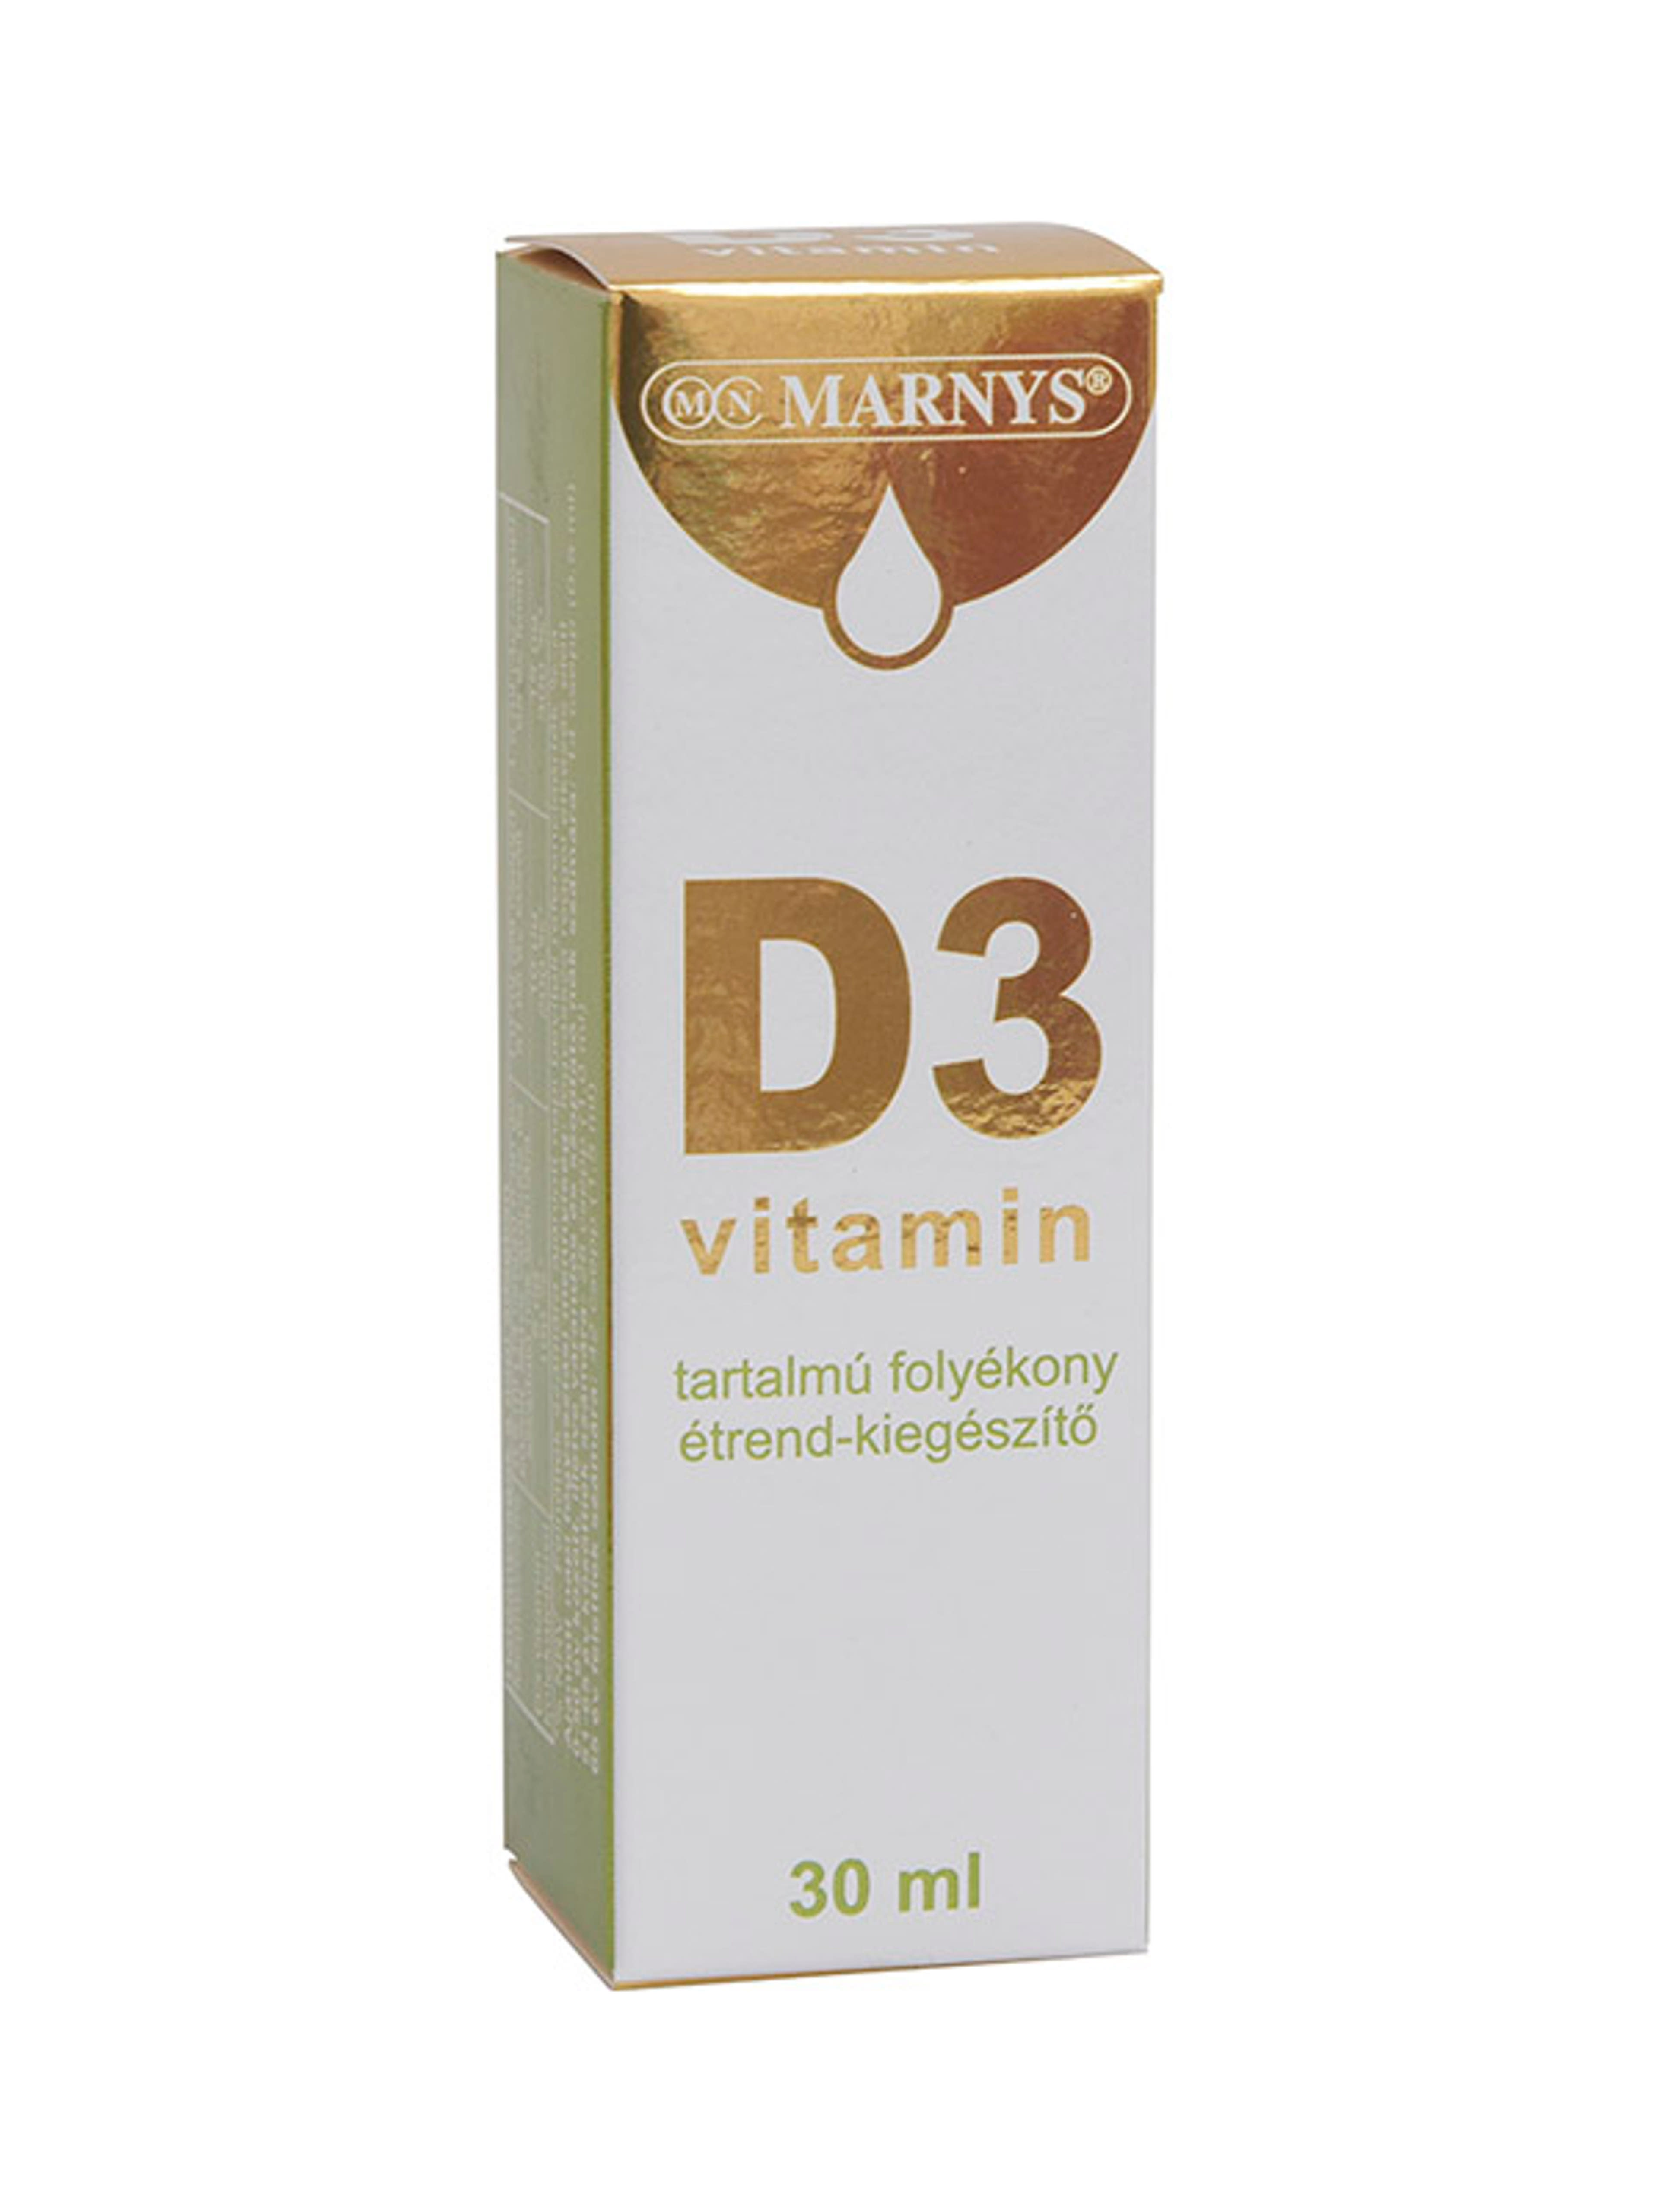 Marnys D3-vitamin tartalmú folyékony étrendkiegészítő - 30 ml